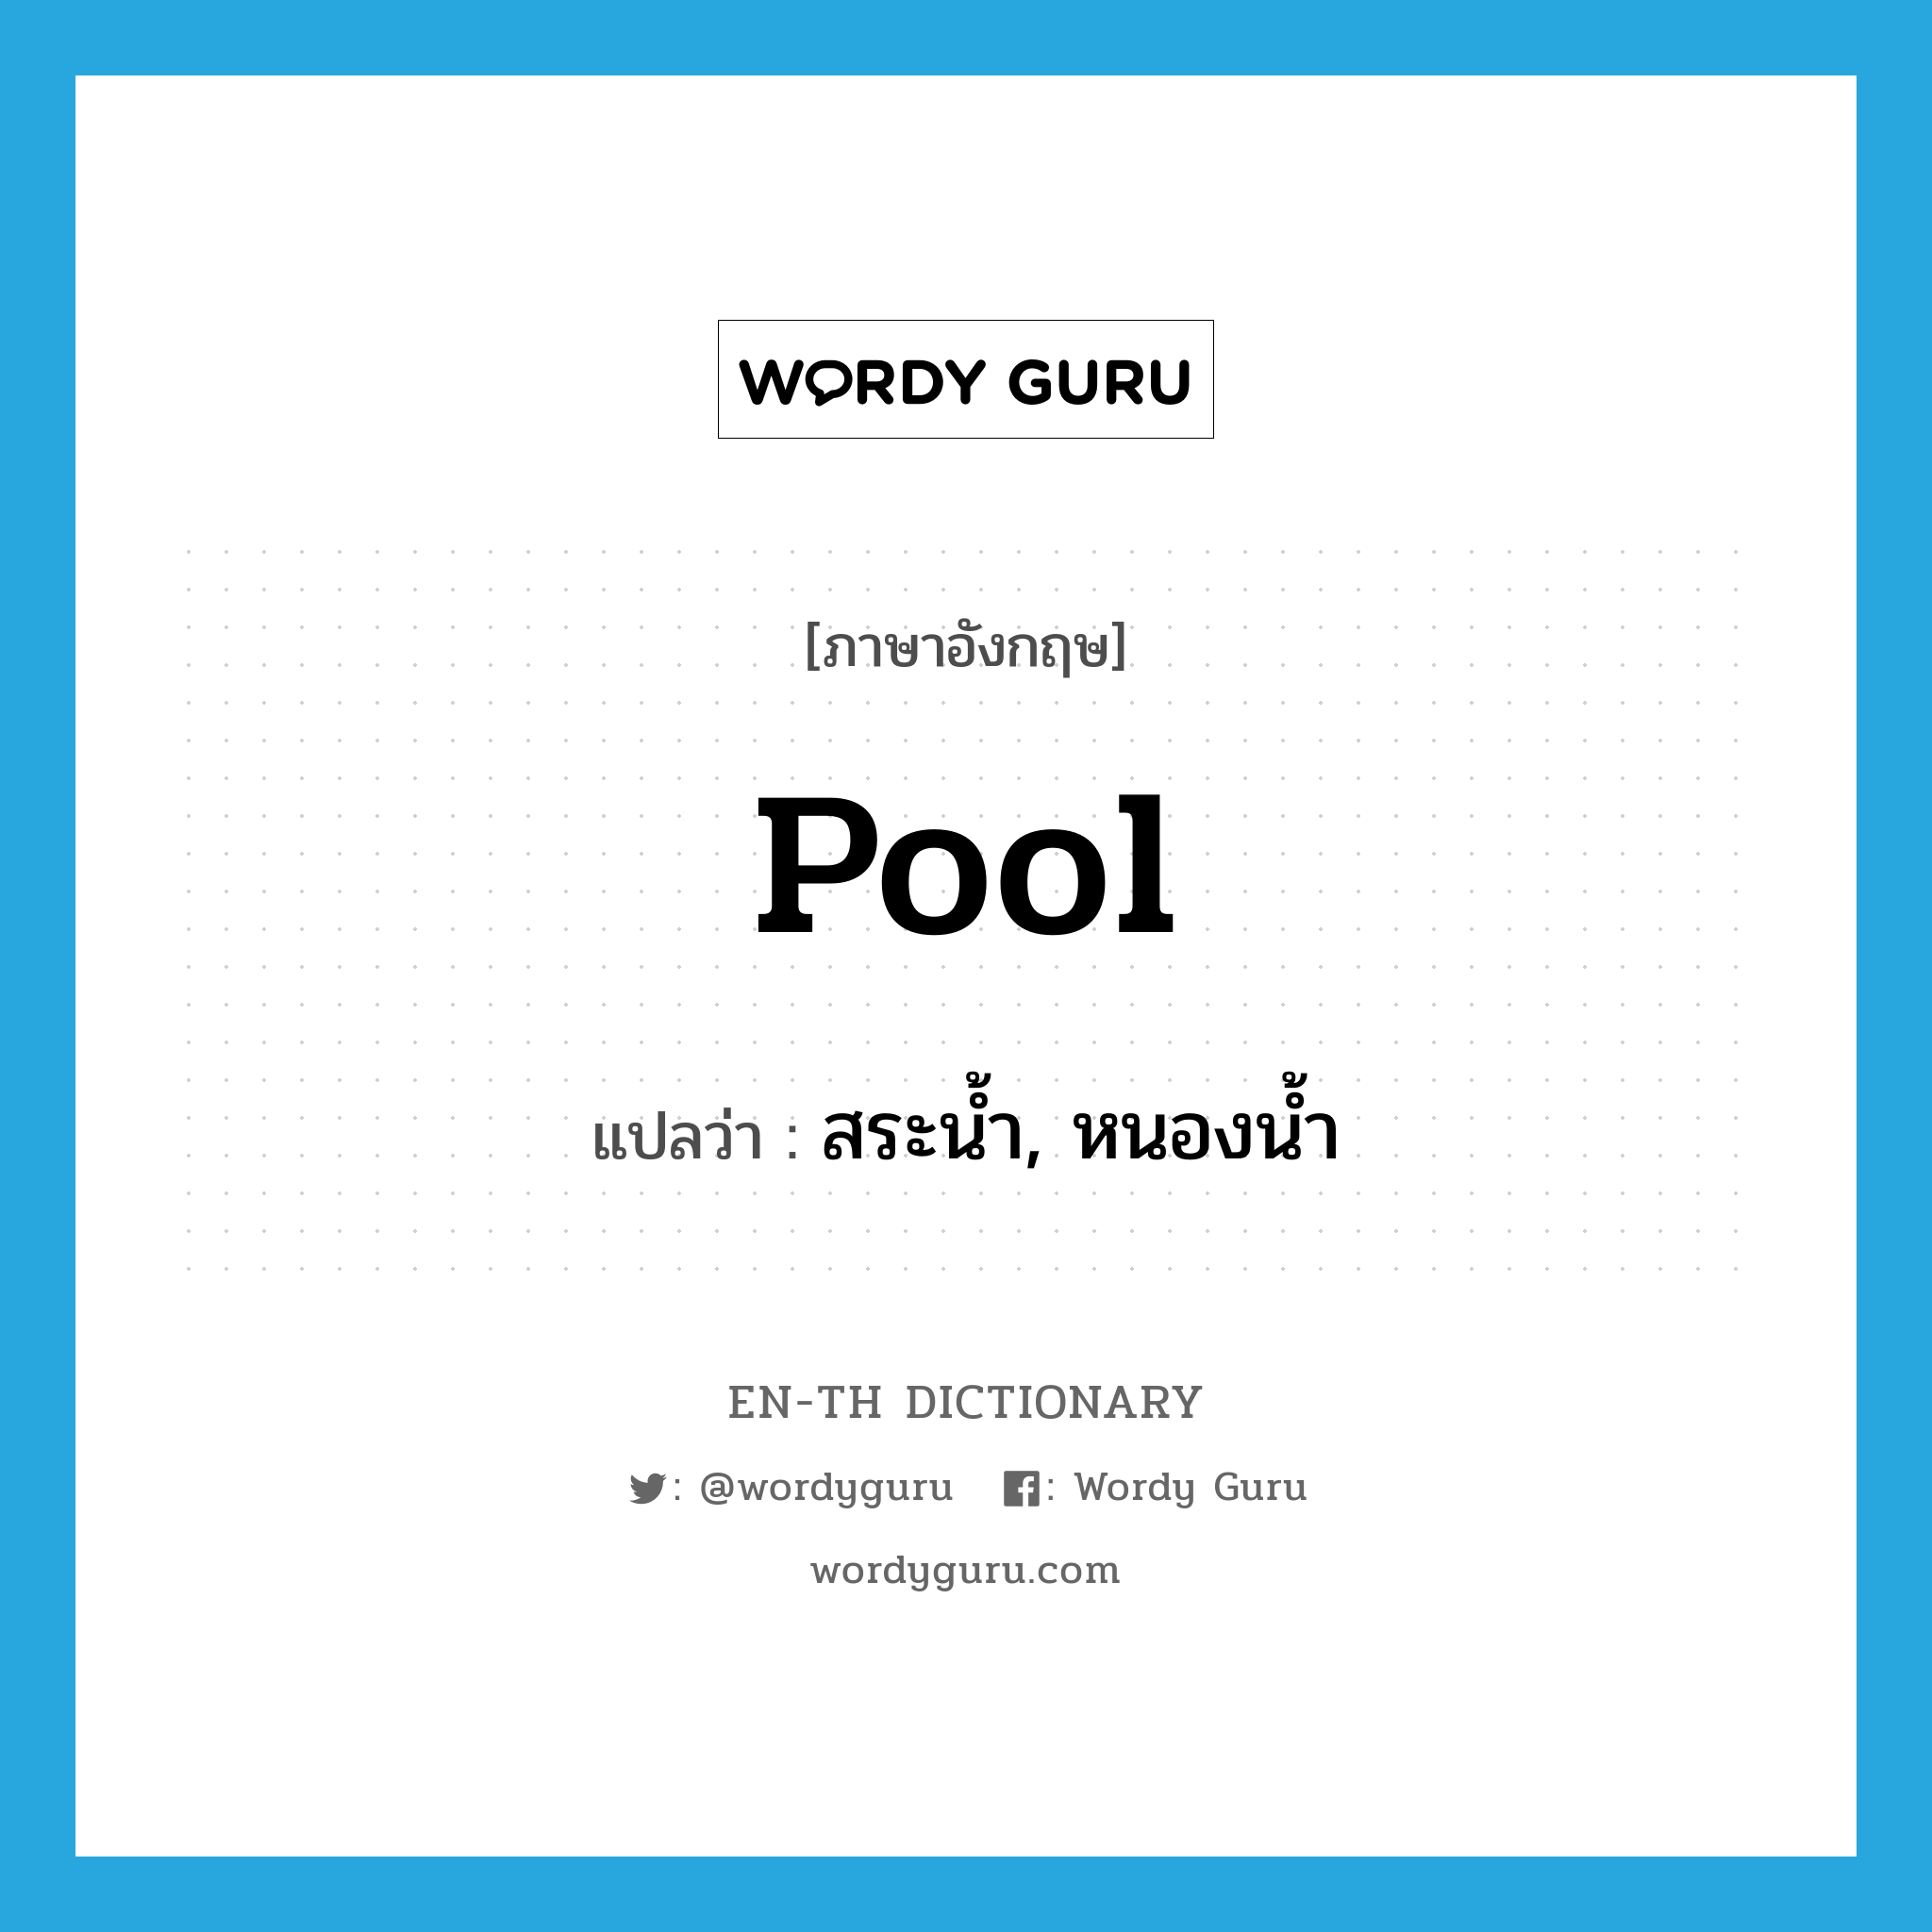 pool แปลว่า?, คำศัพท์ภาษาอังกฤษ pool แปลว่า สระน้ำ, หนองน้ำ ประเภท N หมวด N